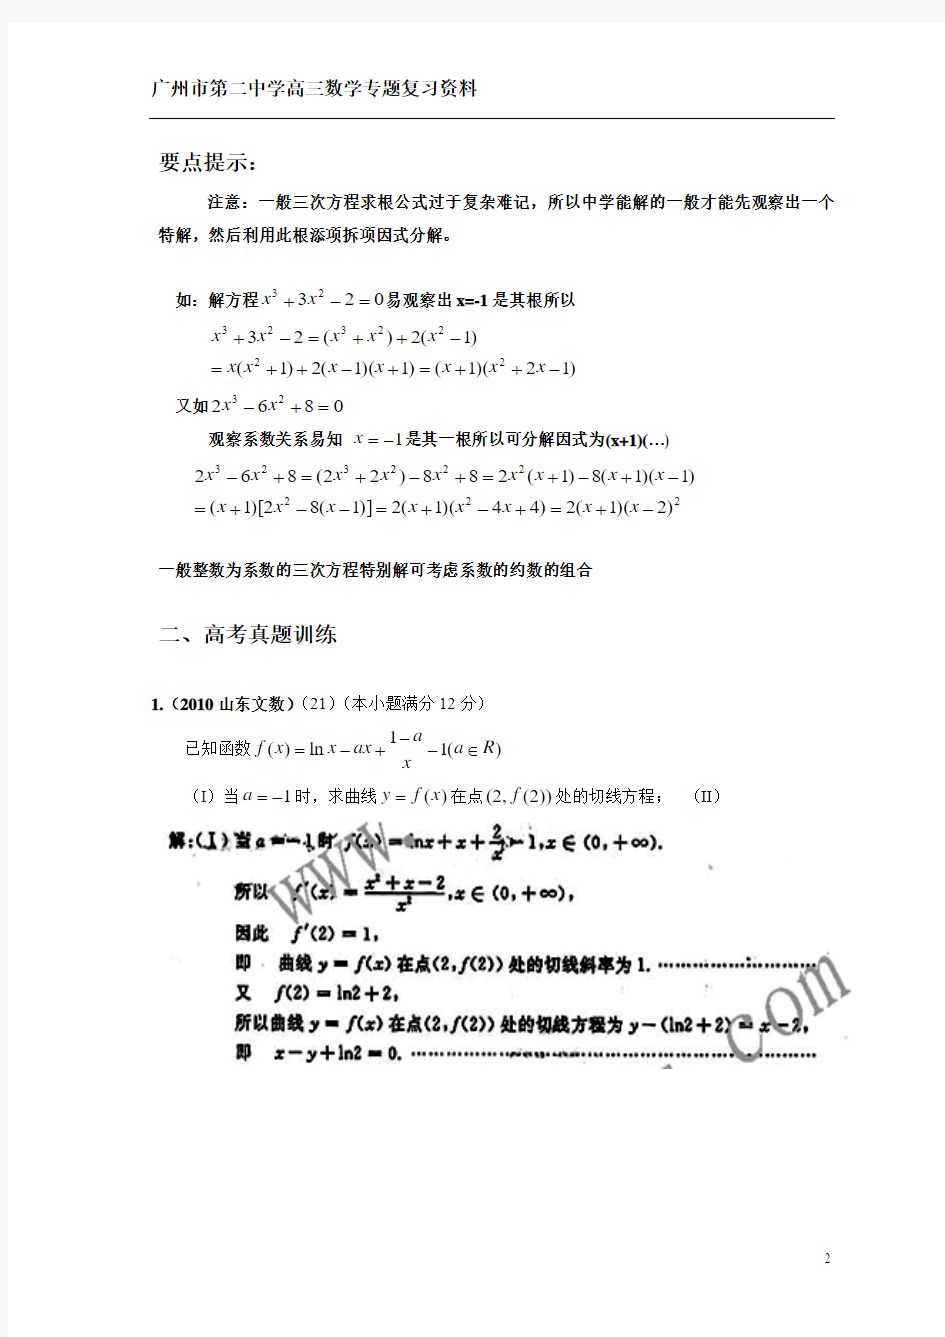 广州二中高三数学专题复习资料_函数的切线方程